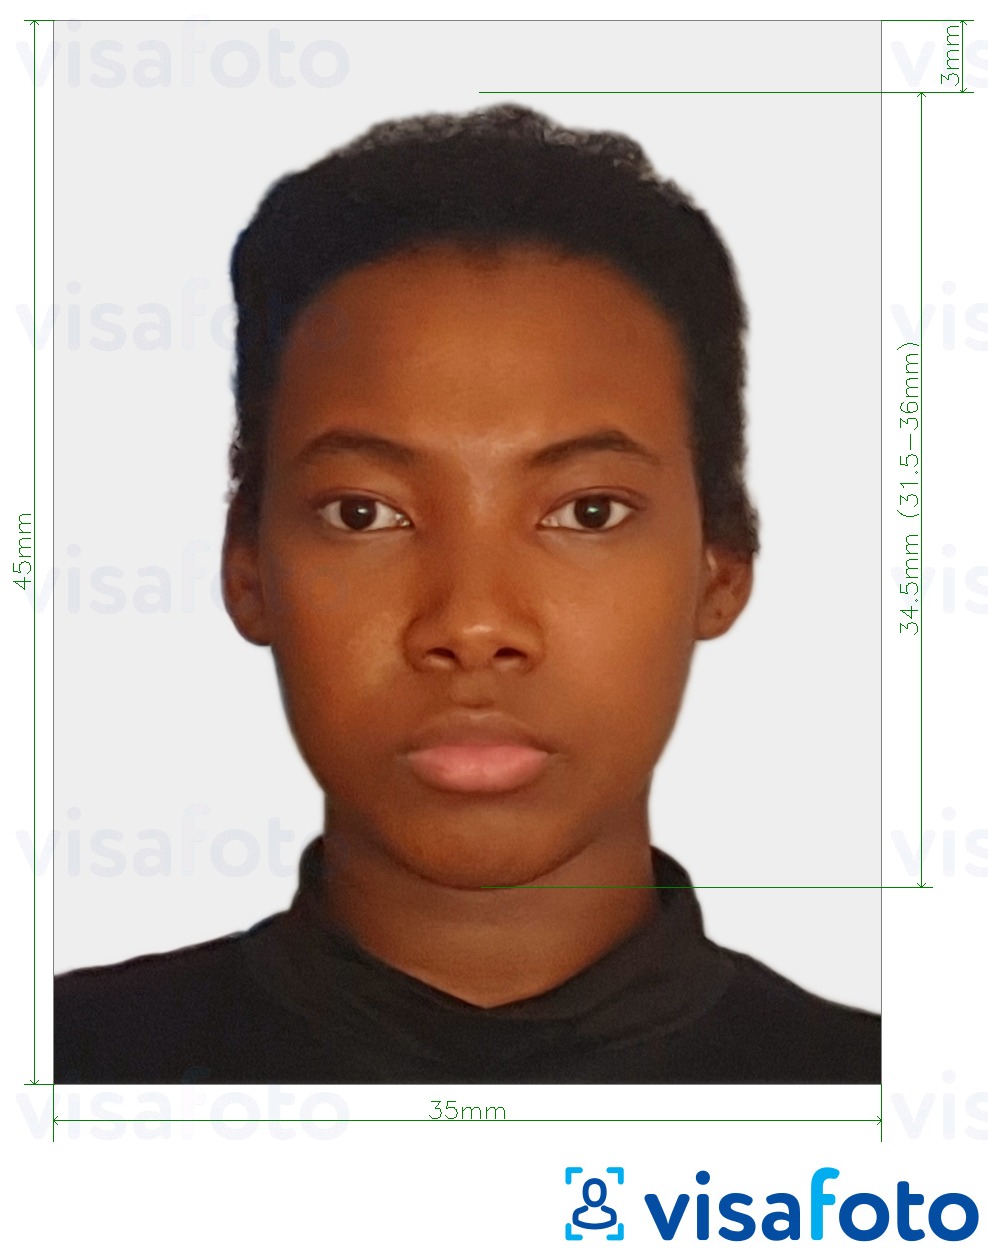 Primjer fotografije za Cote d'Ivoire viza 4,5x3,5 cm (45x35 mm) s točno određenom veličinom